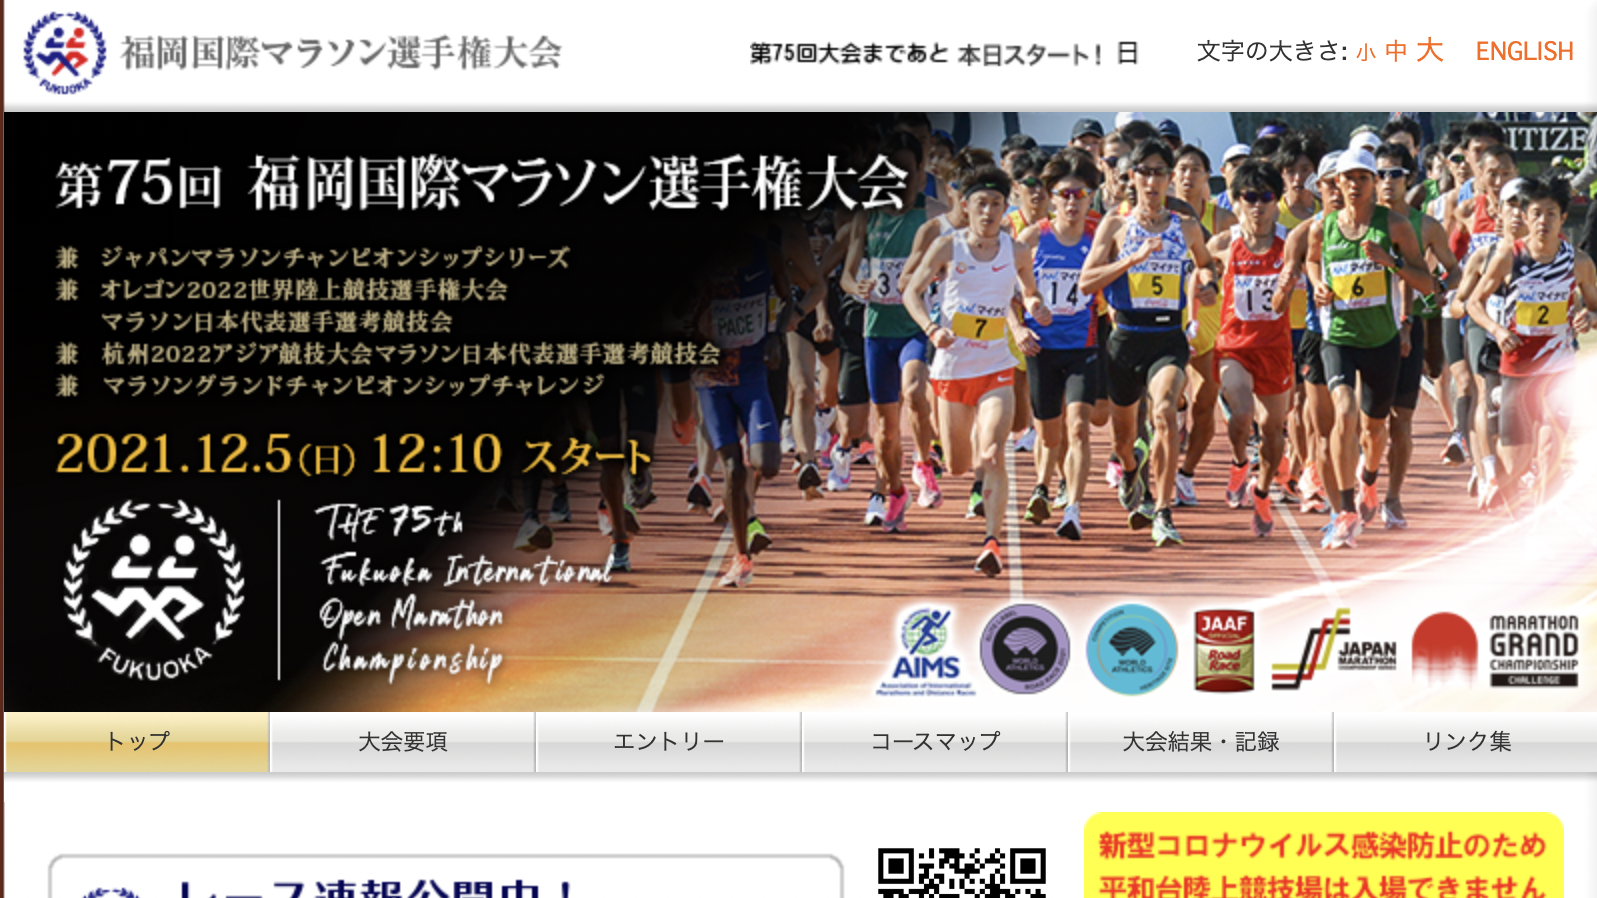 かつて本気で目指した福岡国際マラソンが本日幕を閉じました